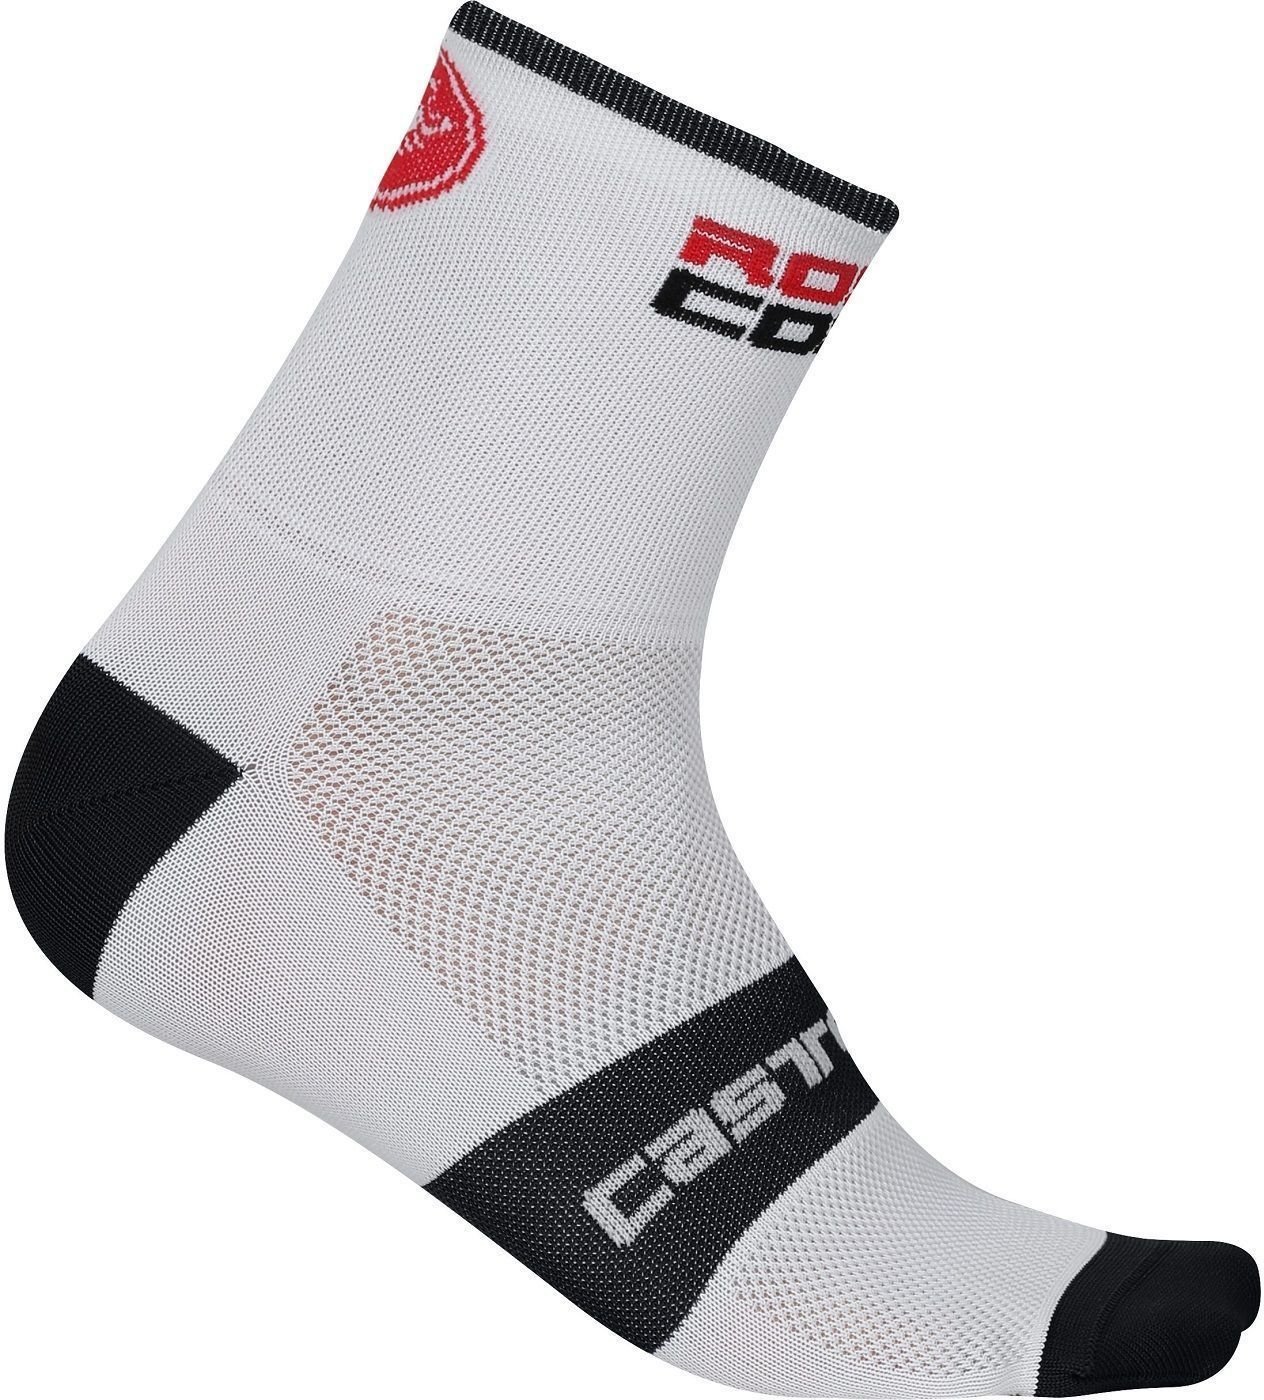 Biciklistički čarape Castelli Rosso Corsa 6 muške čarape White 2XL